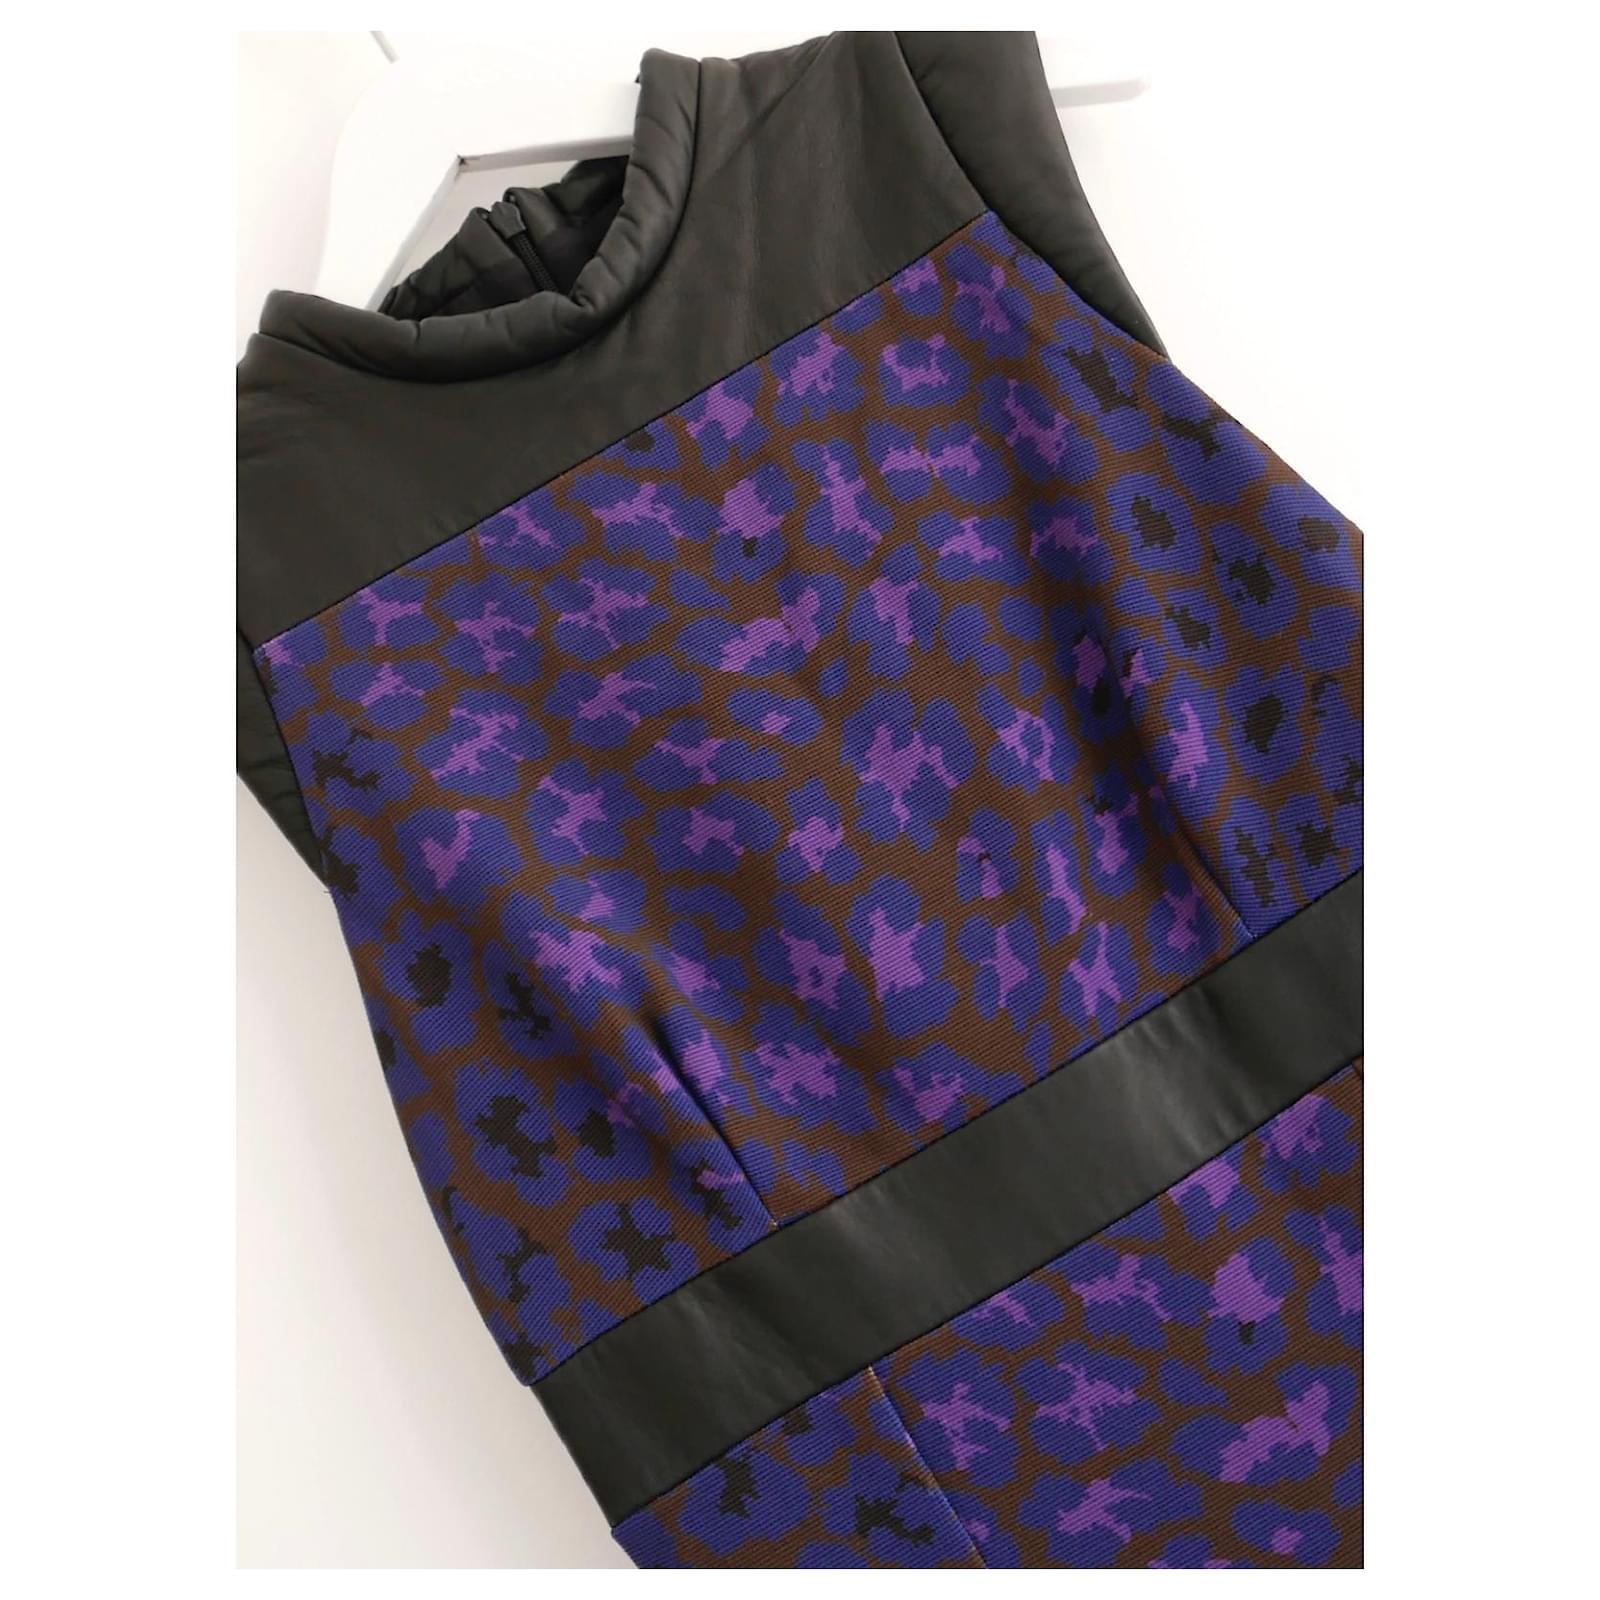 Super cooles Kleid aus Leopardenbrokat und gestepptem Leder aus der Herbstkollektion 2012 von Christopher Kane. Gekauft für £900 und ungetragen. Sie ist aus lilafarbenem und blauem, strukturiertem, dickem Polyester-Twill mit weichen